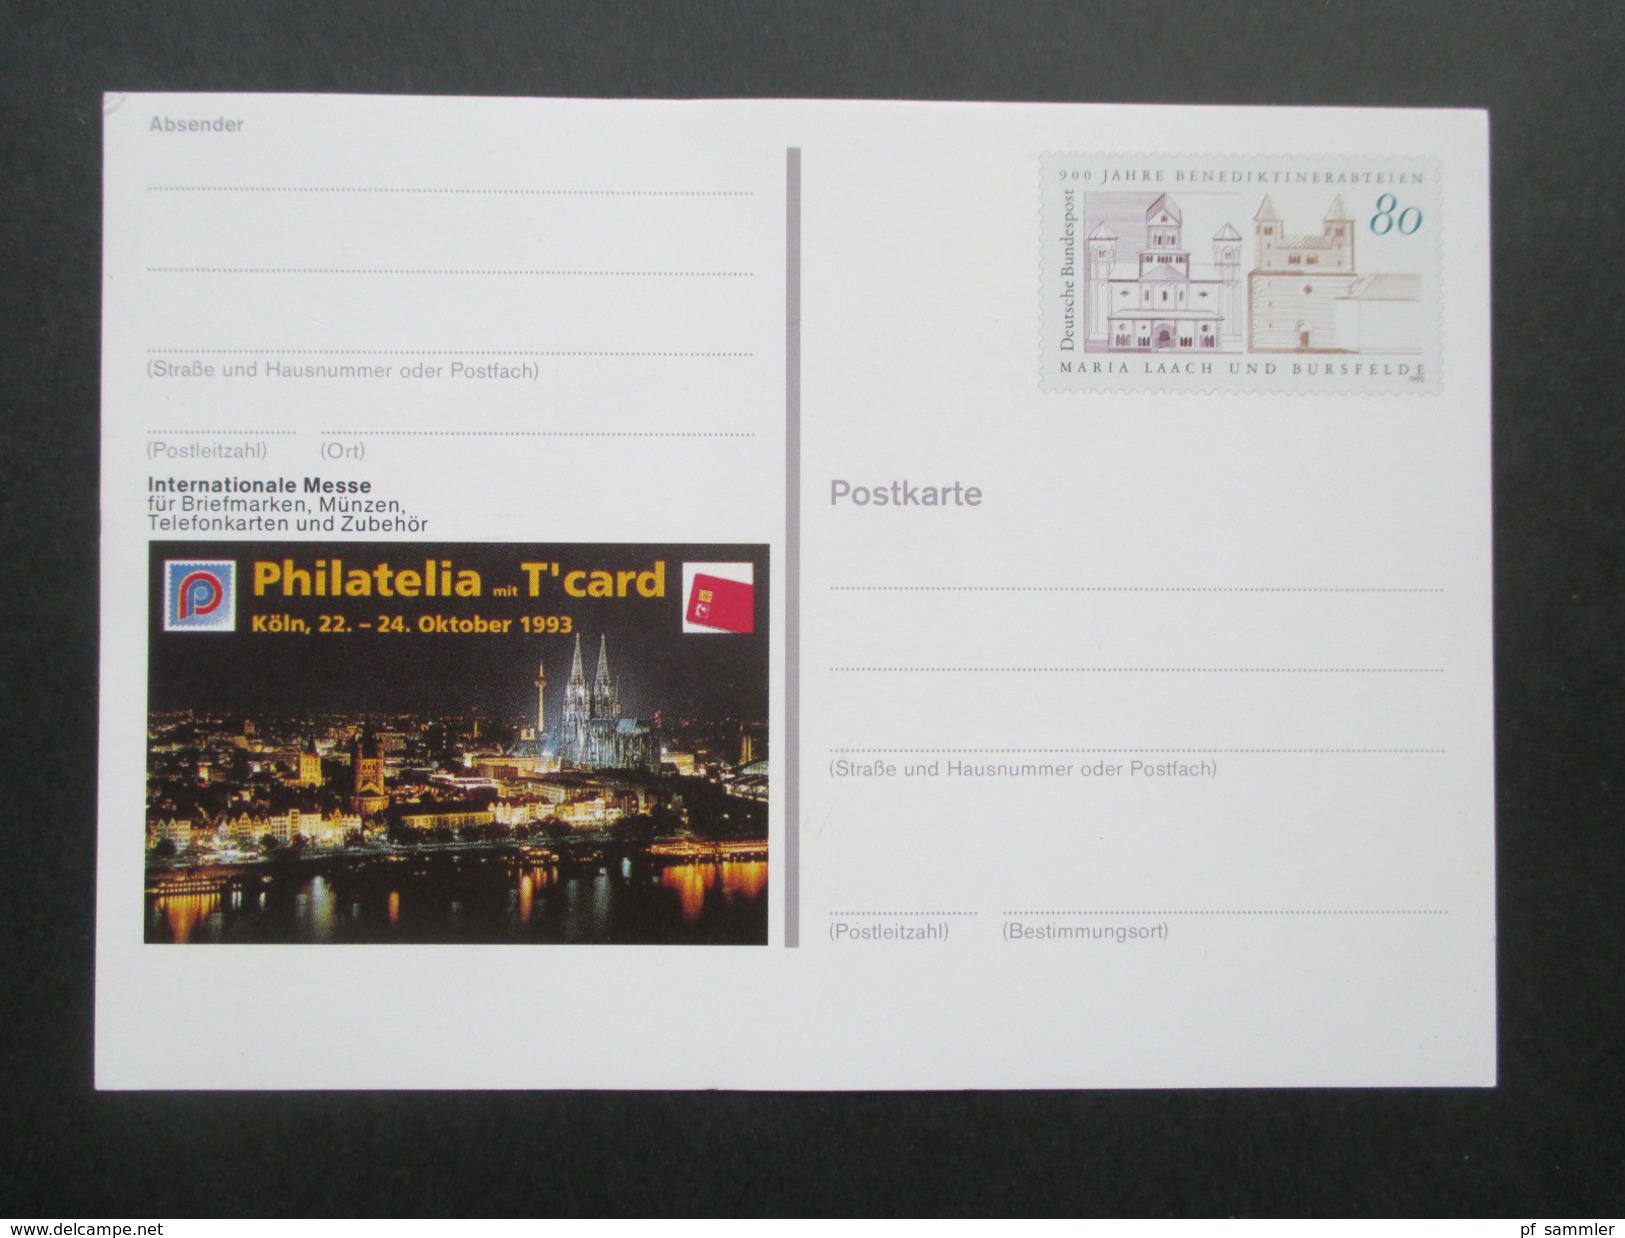 BRD Ganzsachen 1989 - 97 Sonderpostkarten! 45 Stück! Briefmarken Ausstellungen Usw. Ungebraucht / Guter Zustand! - Illustrated Postcards - Mint